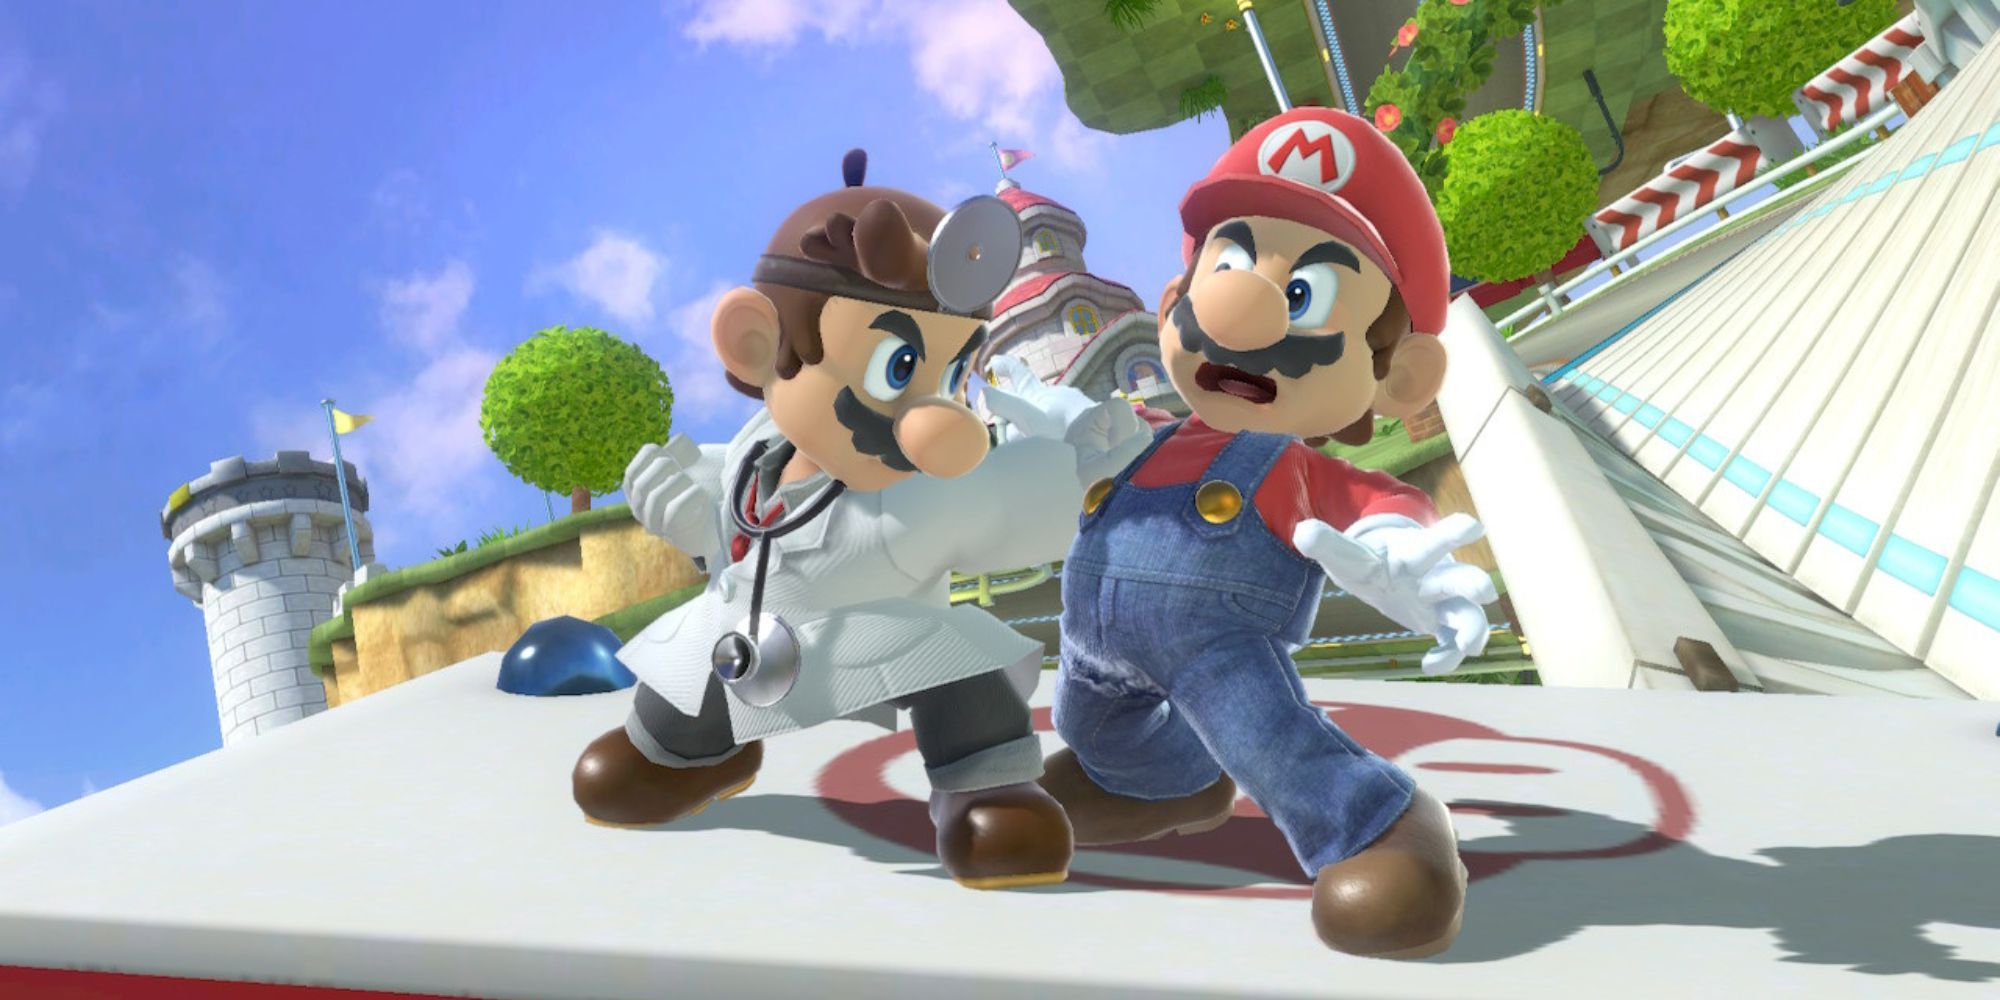 Dr. Mario grabs Mario on Mario Kart 8 stage